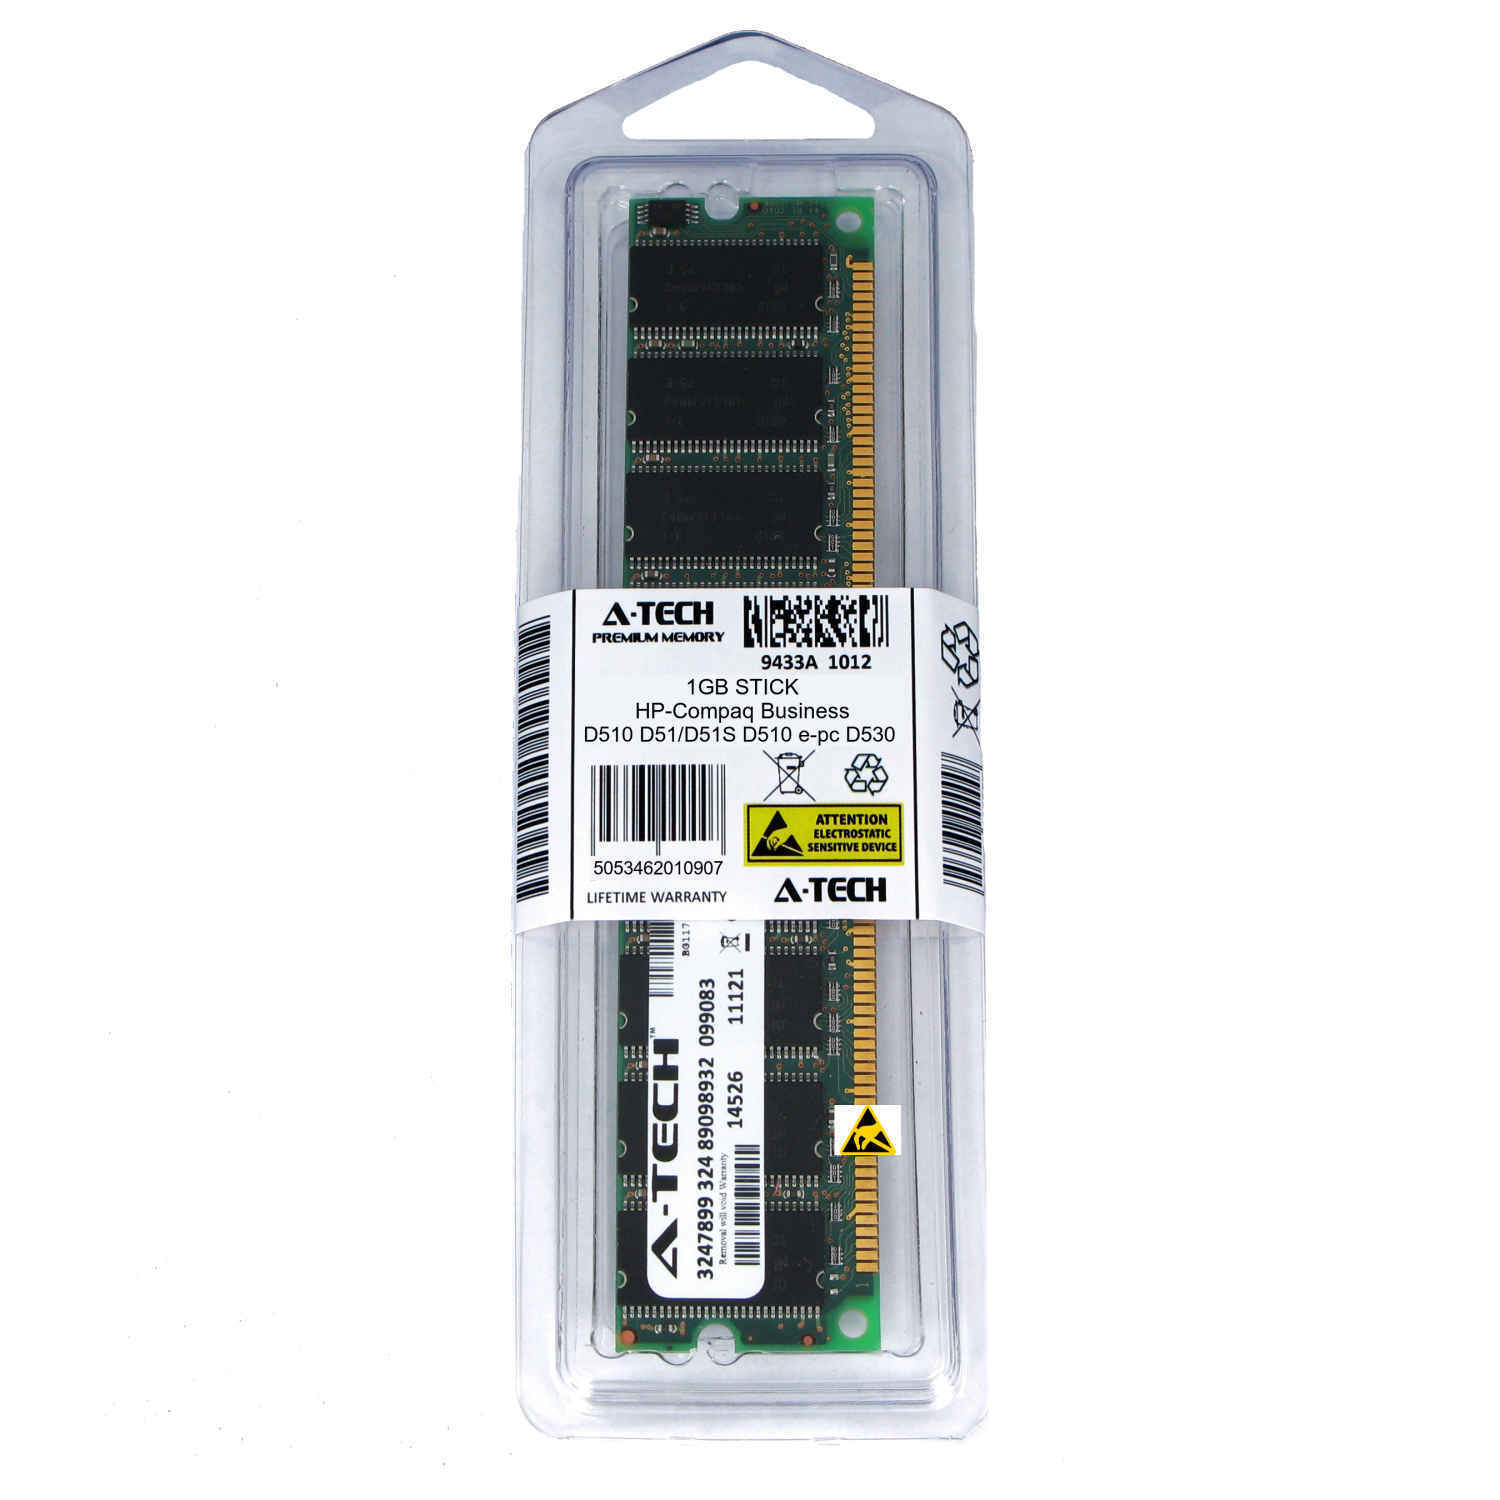 1GB DIMM HP Compaq Business D510 D51/D51S D510 e-pc D530 dc5000 Ram Memory